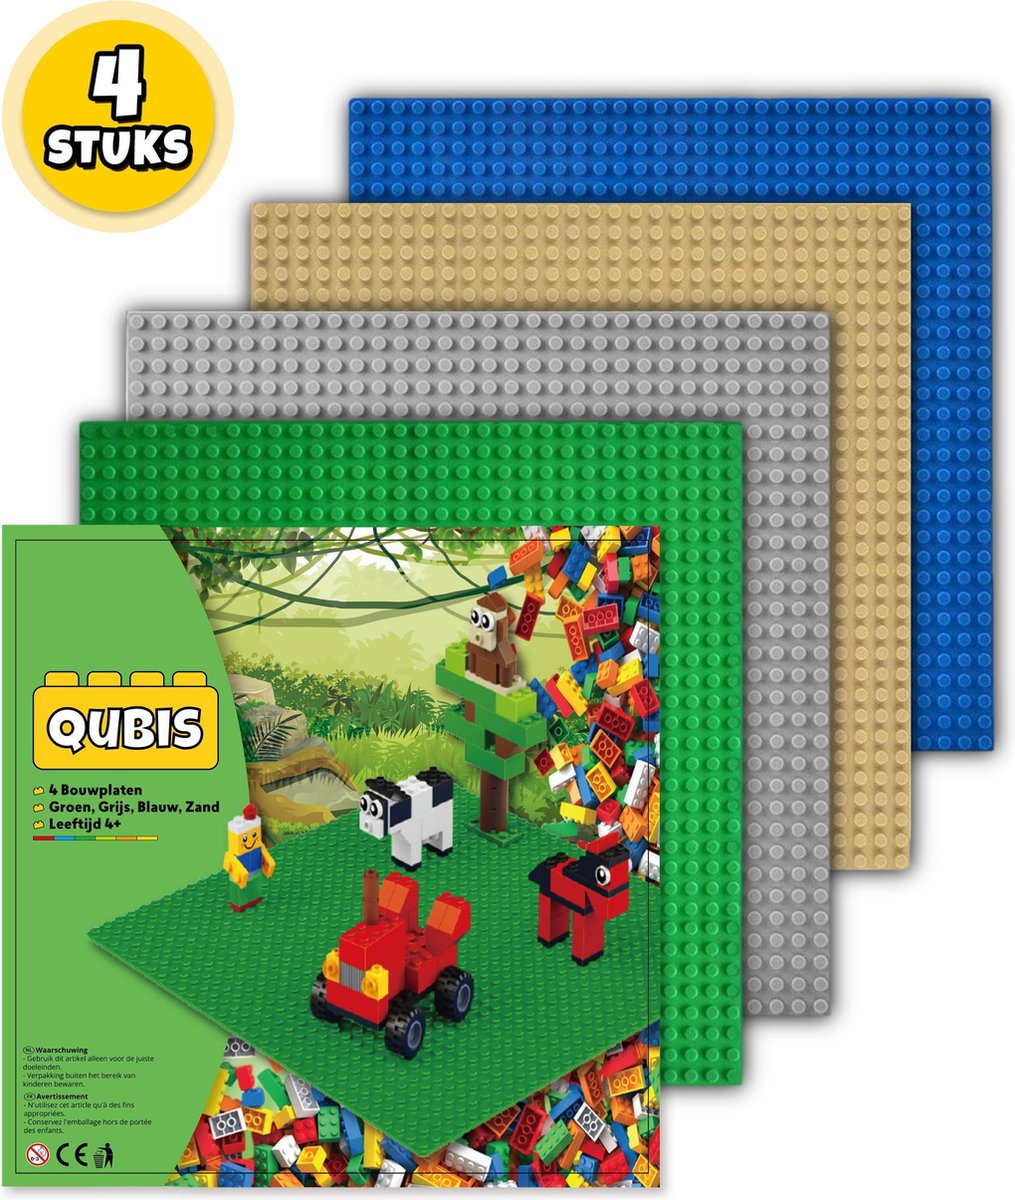 Complete Set Bouwplaten geschikt voor LEGO - 4 Stuks - Groen, Grijs, Blauw,  Zand -... | bol.com